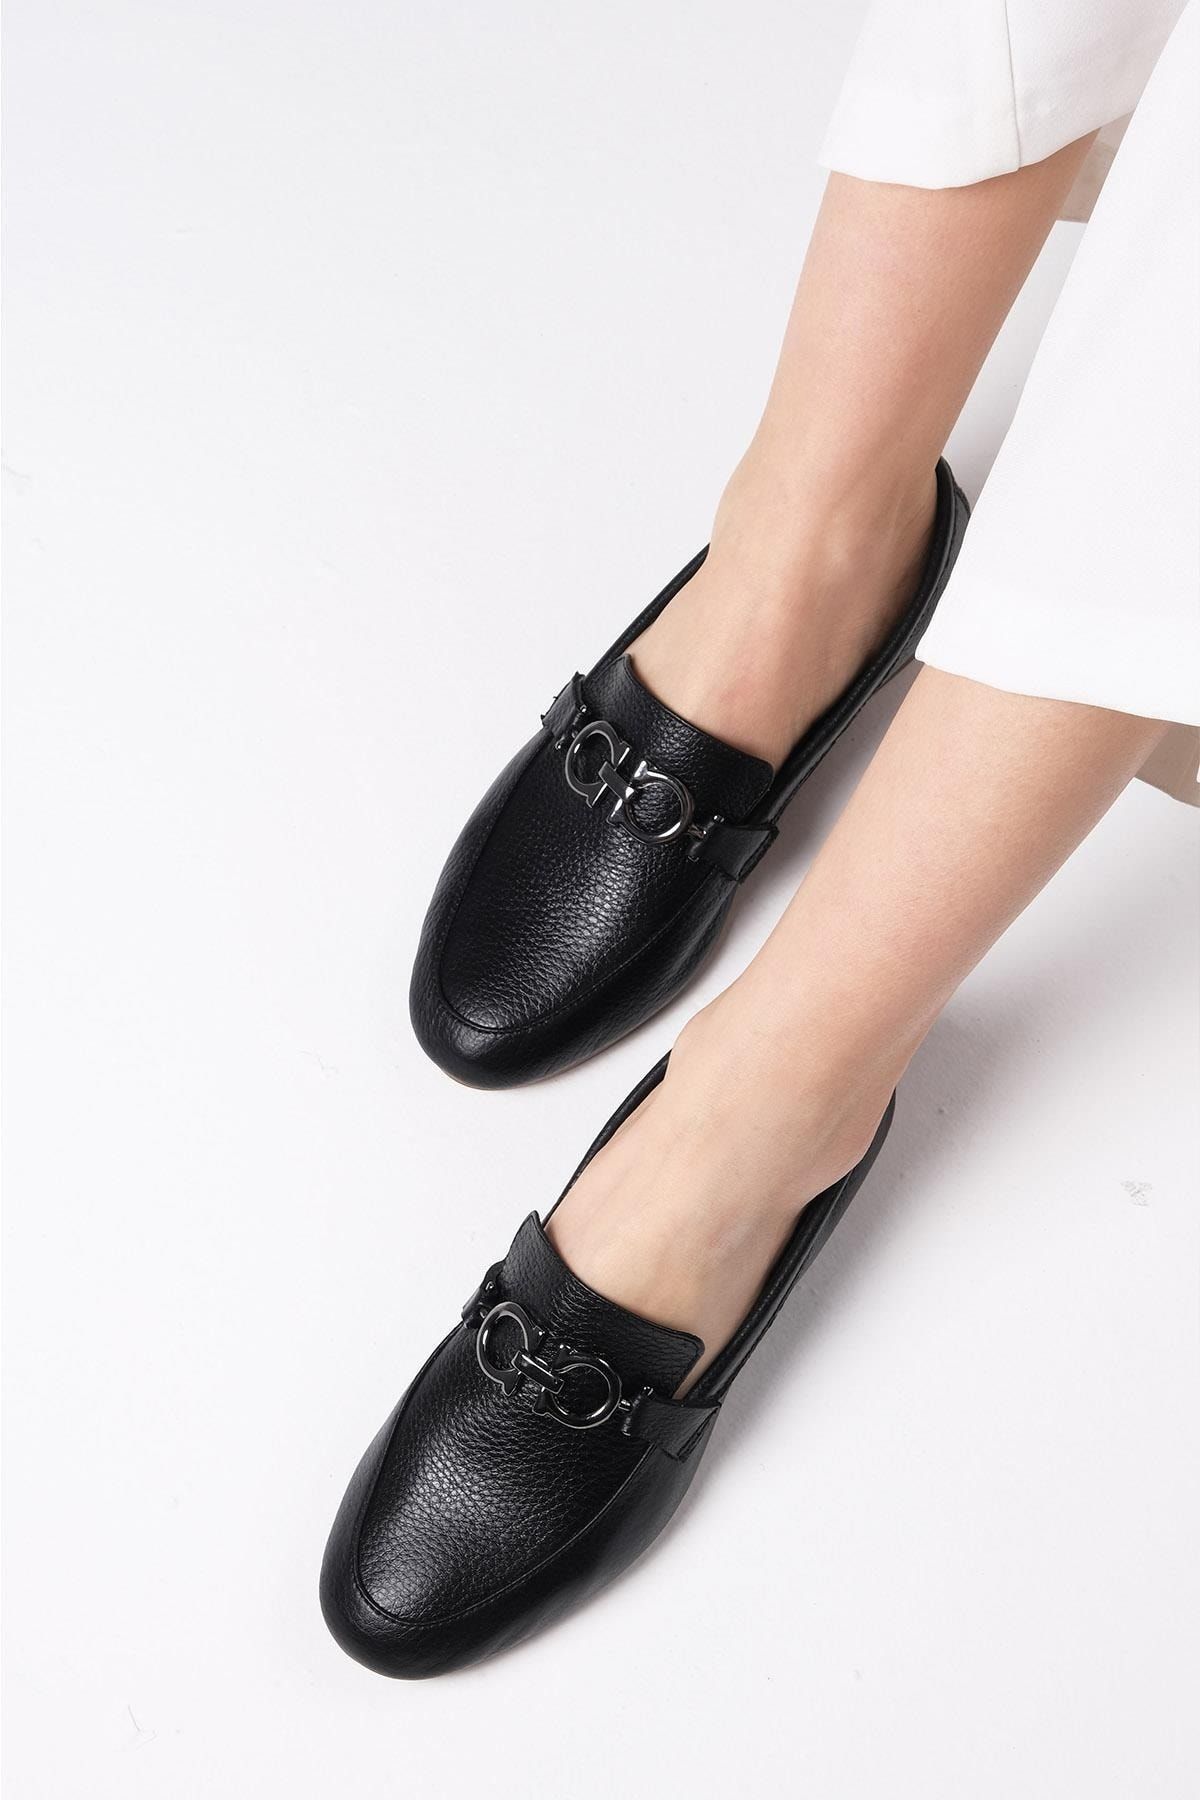 Mio Gusto Willow %100 Hakiki Deri Siyah Renk Ultra Esnek Tabanlı Kadın Loafer Ayakkabı